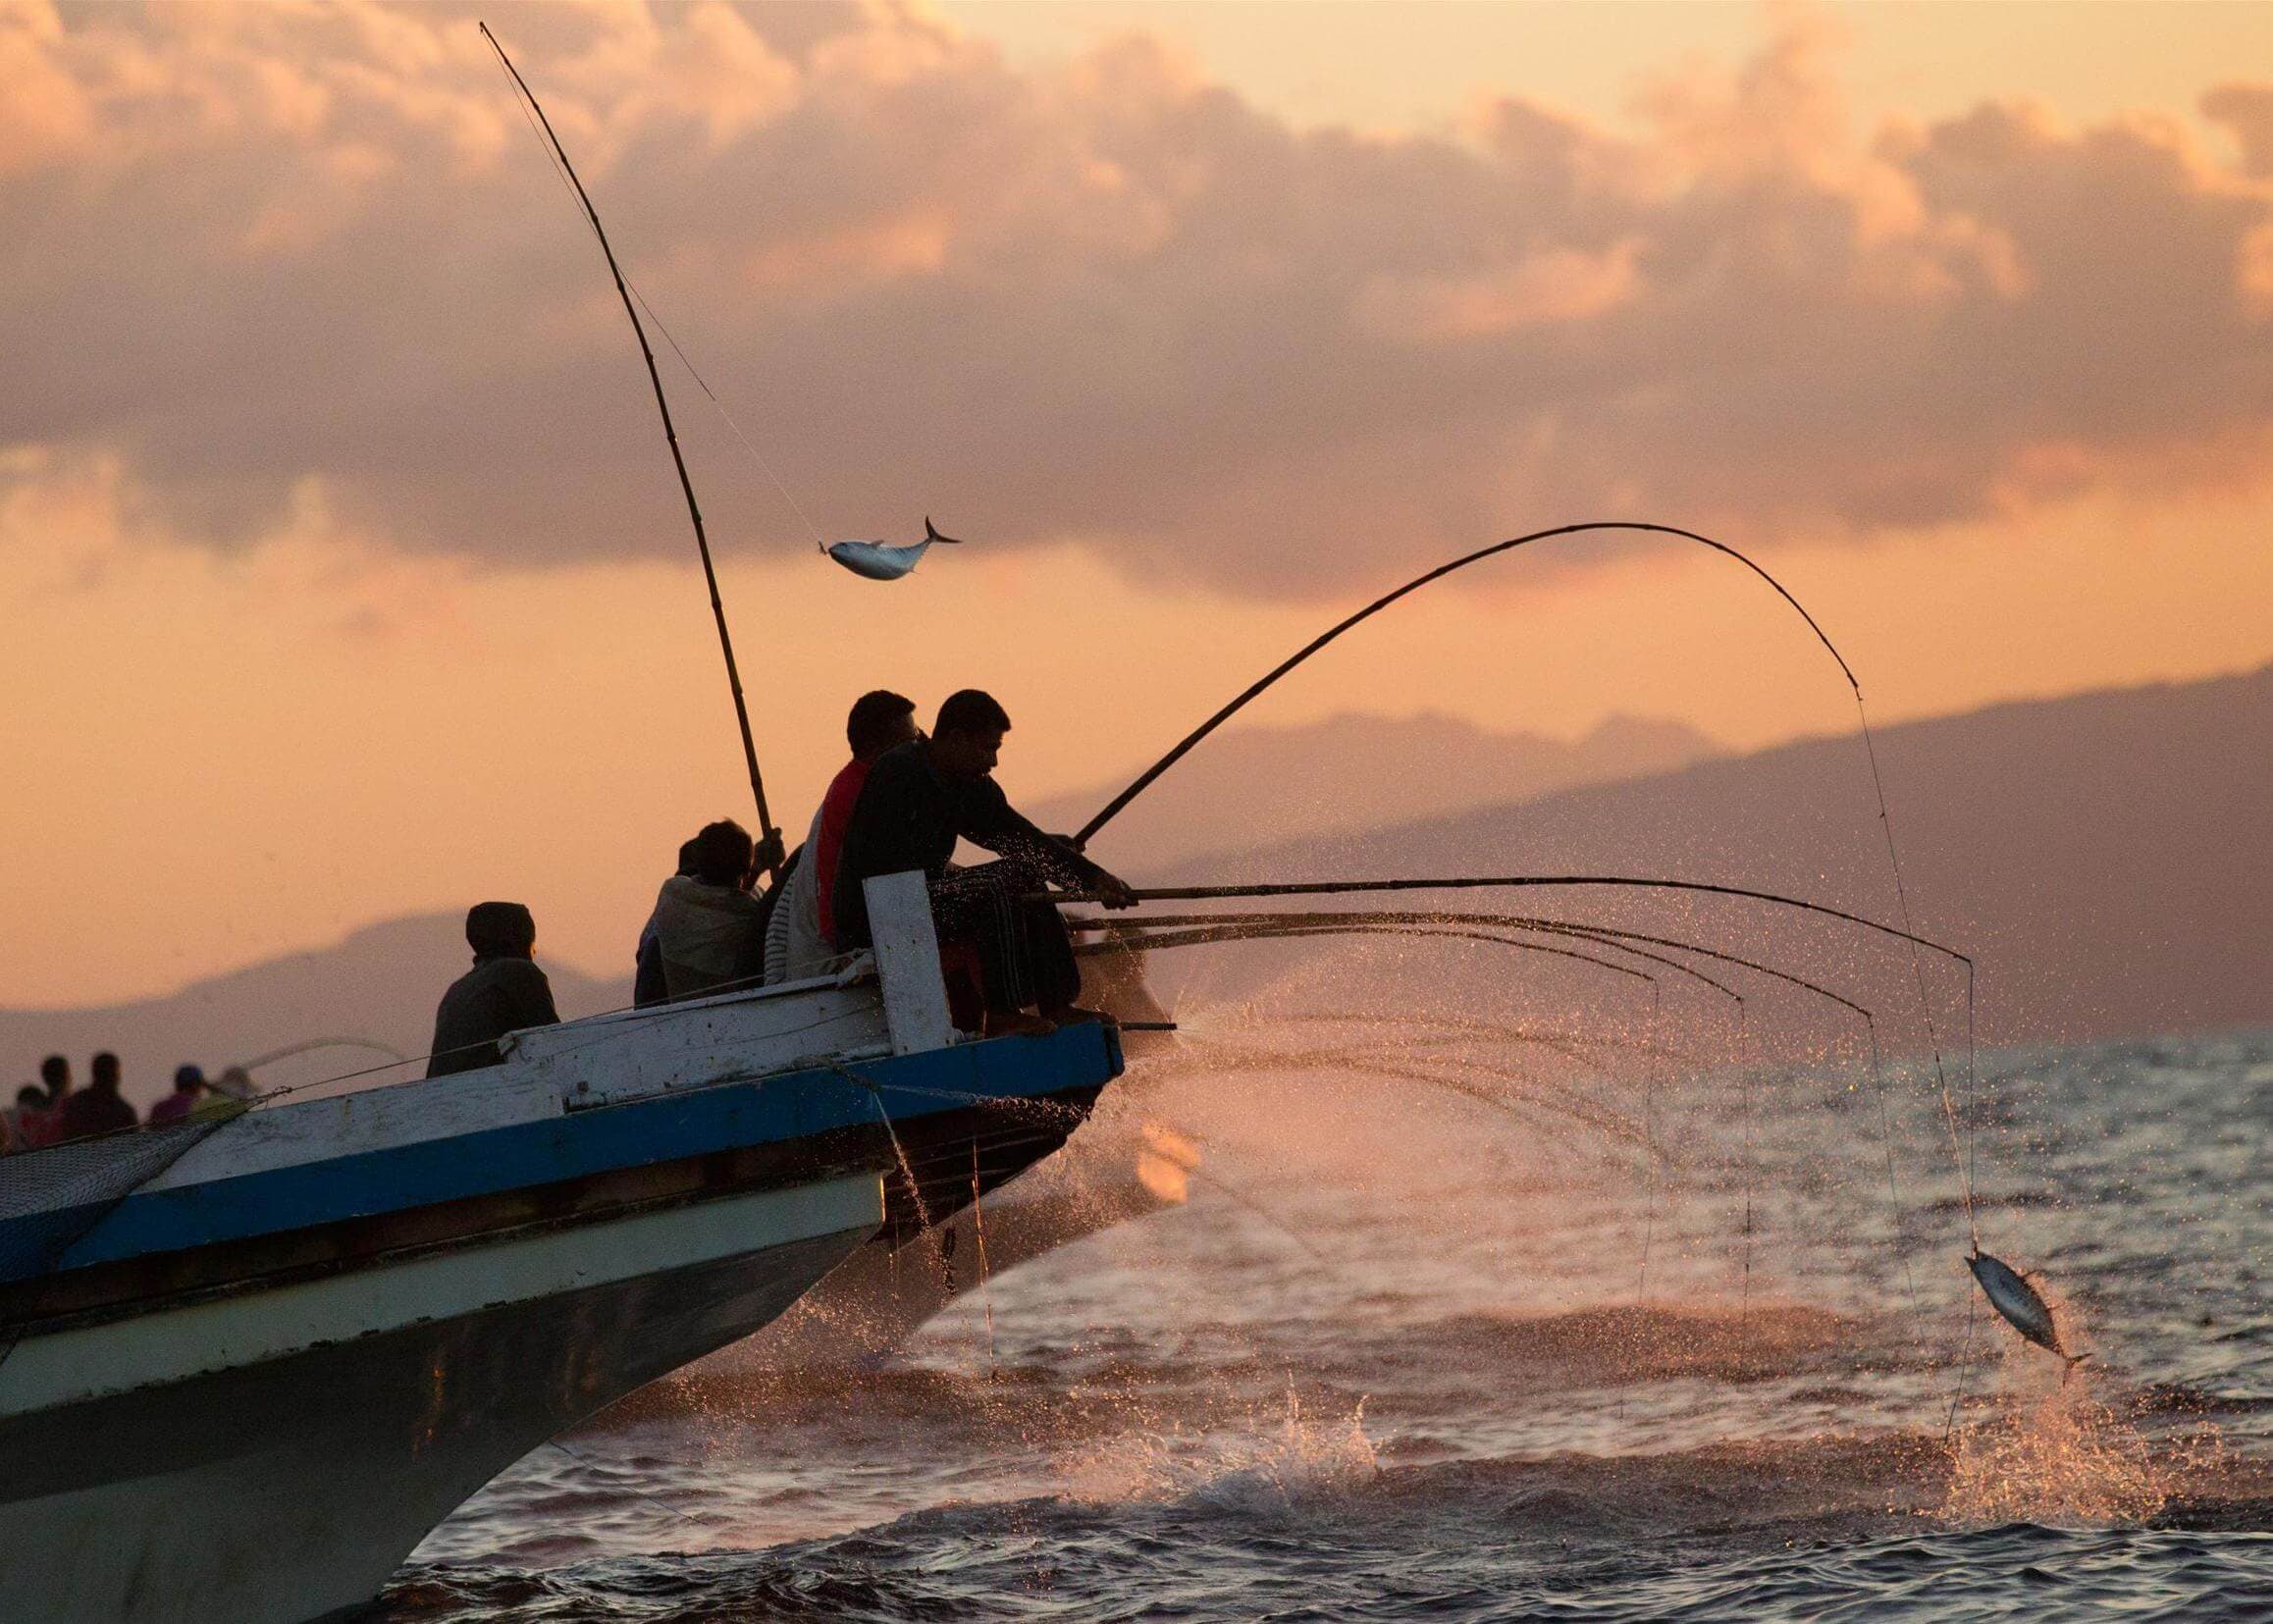 يقوم الصيادون بالصيد بالقارب في المساء بتوقيت ترينكومالي سريلانكا